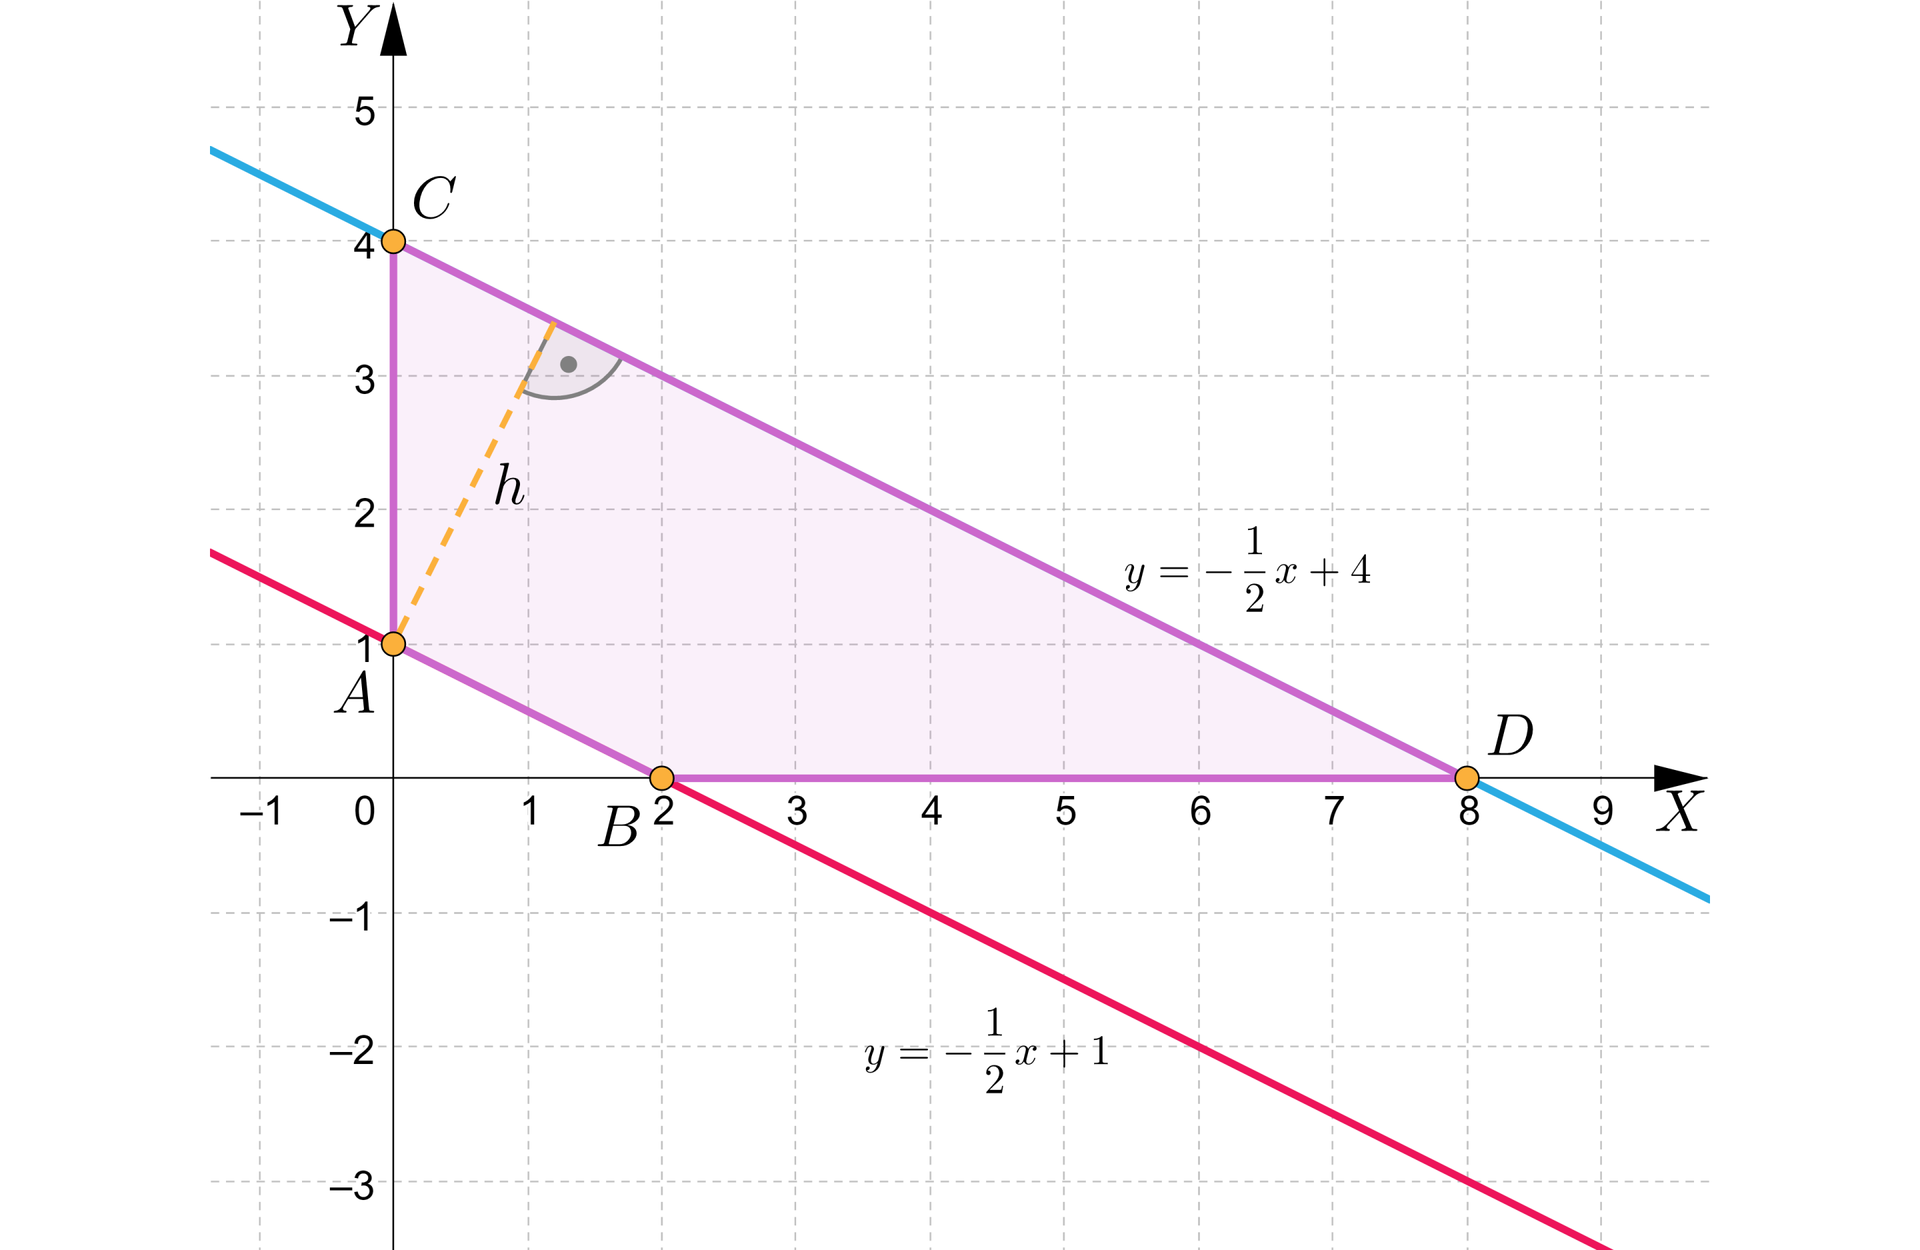 Grafika przedstawia układ współrzędnych z poziomą osią x od minus jeden do dziewięciu i pionową osią y od minus trzech do pięciu. Na płaszczyźnie znajdują się dwie proste pierwsza z nich przecina oś x w punkcie początek nawiasu, 2, 0, zamknięcie nawiasu oraz oś y w punkcie początek nawiasu, 0, 1, zamknięcie nawiasu. Prosta ta ma równanie y=−12x+1. Druga prosta przecina oś x w punkcie początek nawiasu, 8, 0, zamknięcie nawiasu oraz oś y w punkcie początek nawiasu, 0, 4, zamknięcie nawiasu. Prosta ta ma równanie y=−12x+4. Punkty przecięcia się prostych z osiami oznaczono literami A, B, C oraz D. Punkt początek nawiasu, 0, 1, zamknięcie nawiasu oznaczono literą A. Punkt początek nawiasu, 2, 0, zamknięcie nawiasu oznaczono literą B. Punkt początek nawiasu, 0, 4, zamknięcie nawiasu oznaczono literą C. Punkt początek nawiasu, 8, 0, zamknięcie nawiasu oznaczono literą D. Punkty połączono w taki sposób, że przyjęły kształt trapezu, a obszar wewnątrz zaznaczono kolorem fioletowym. Odcinek AB stanowi krótszą podstawę trapezu, a odcinek CD stanowi dłuższą podstawę trapezu. Z wierzchołka A poprowadzono wysokość h , prostopadle do podstawy CD.